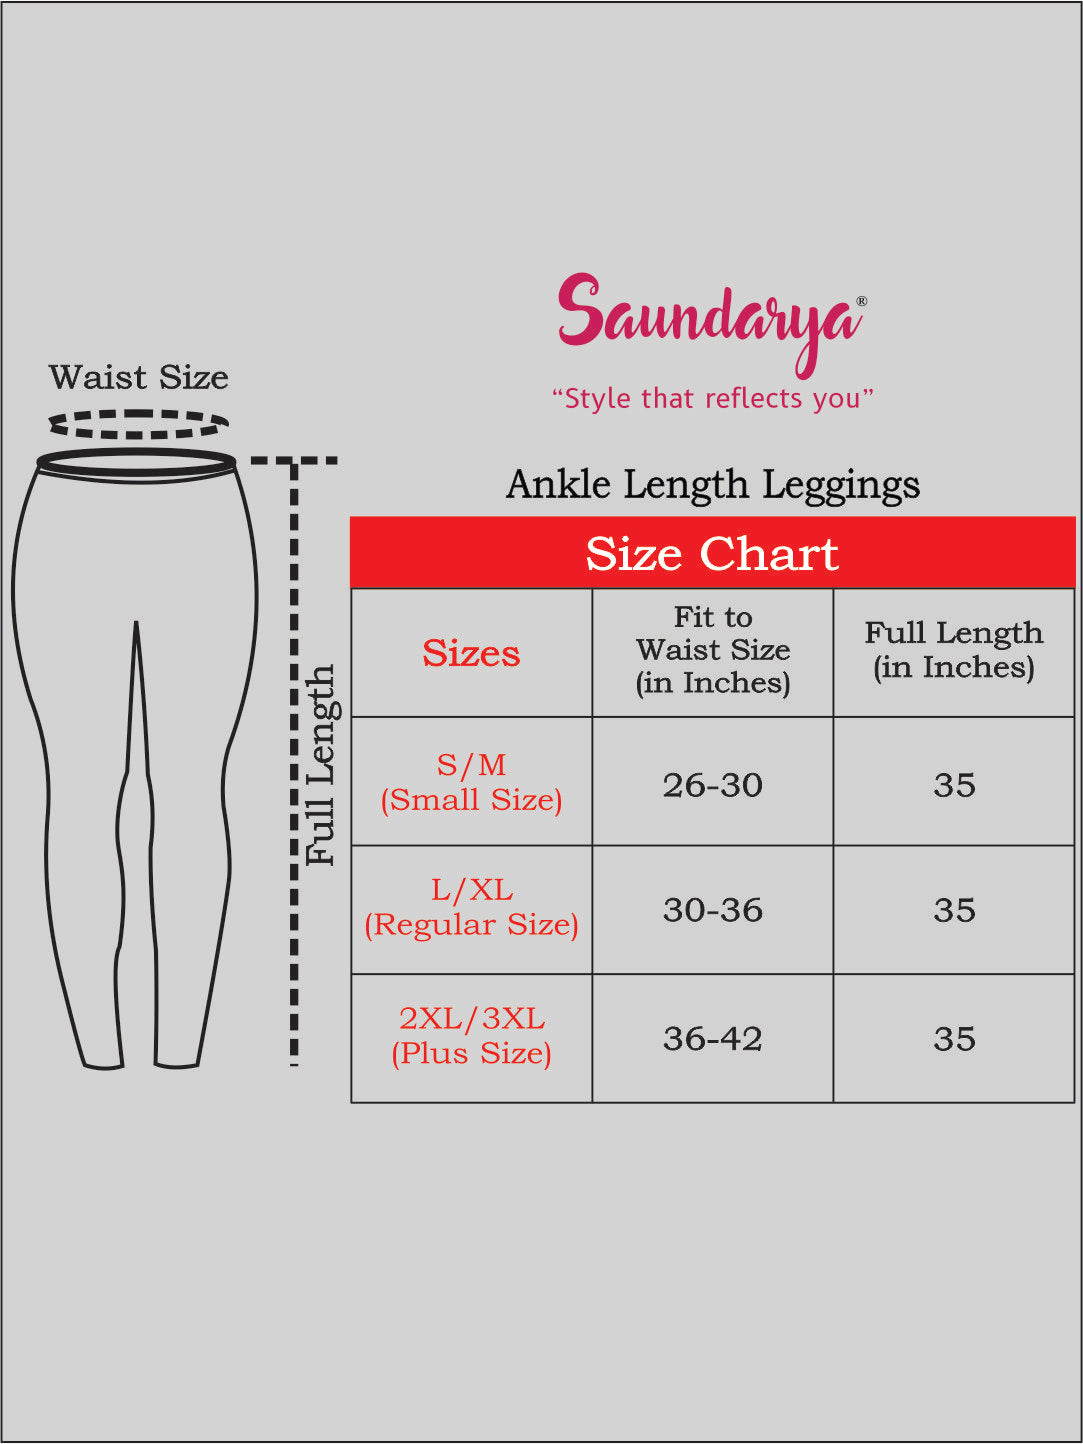 Saundarya Women's Off White Ankle Length Leggings Cotton